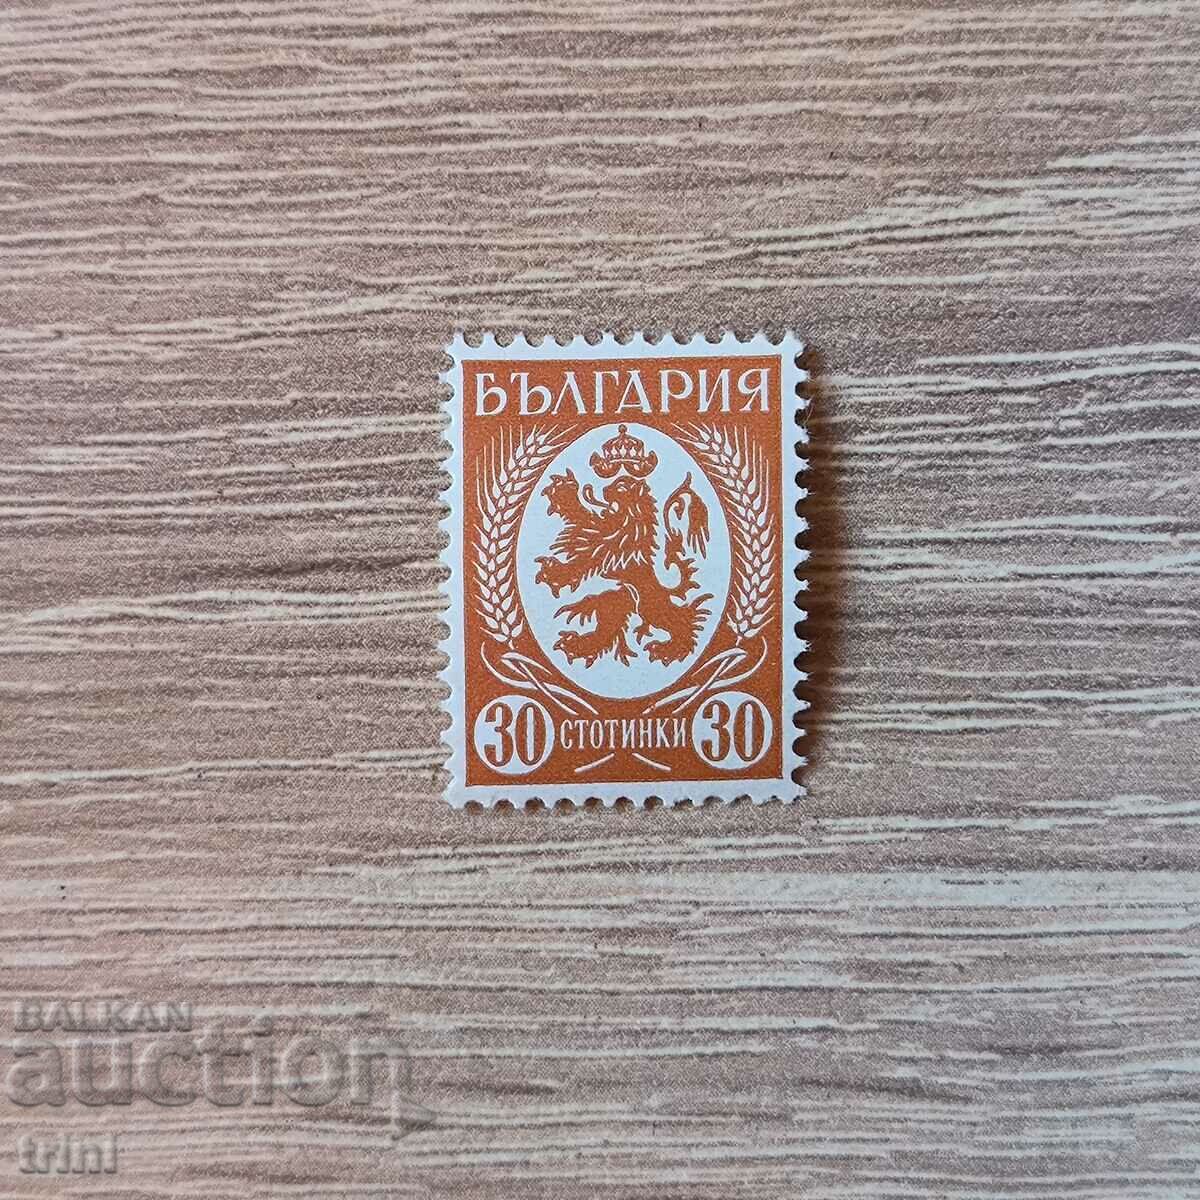 Βουλγαρία 1936 30 cents κιτρινοκαφέ παραλλαγή